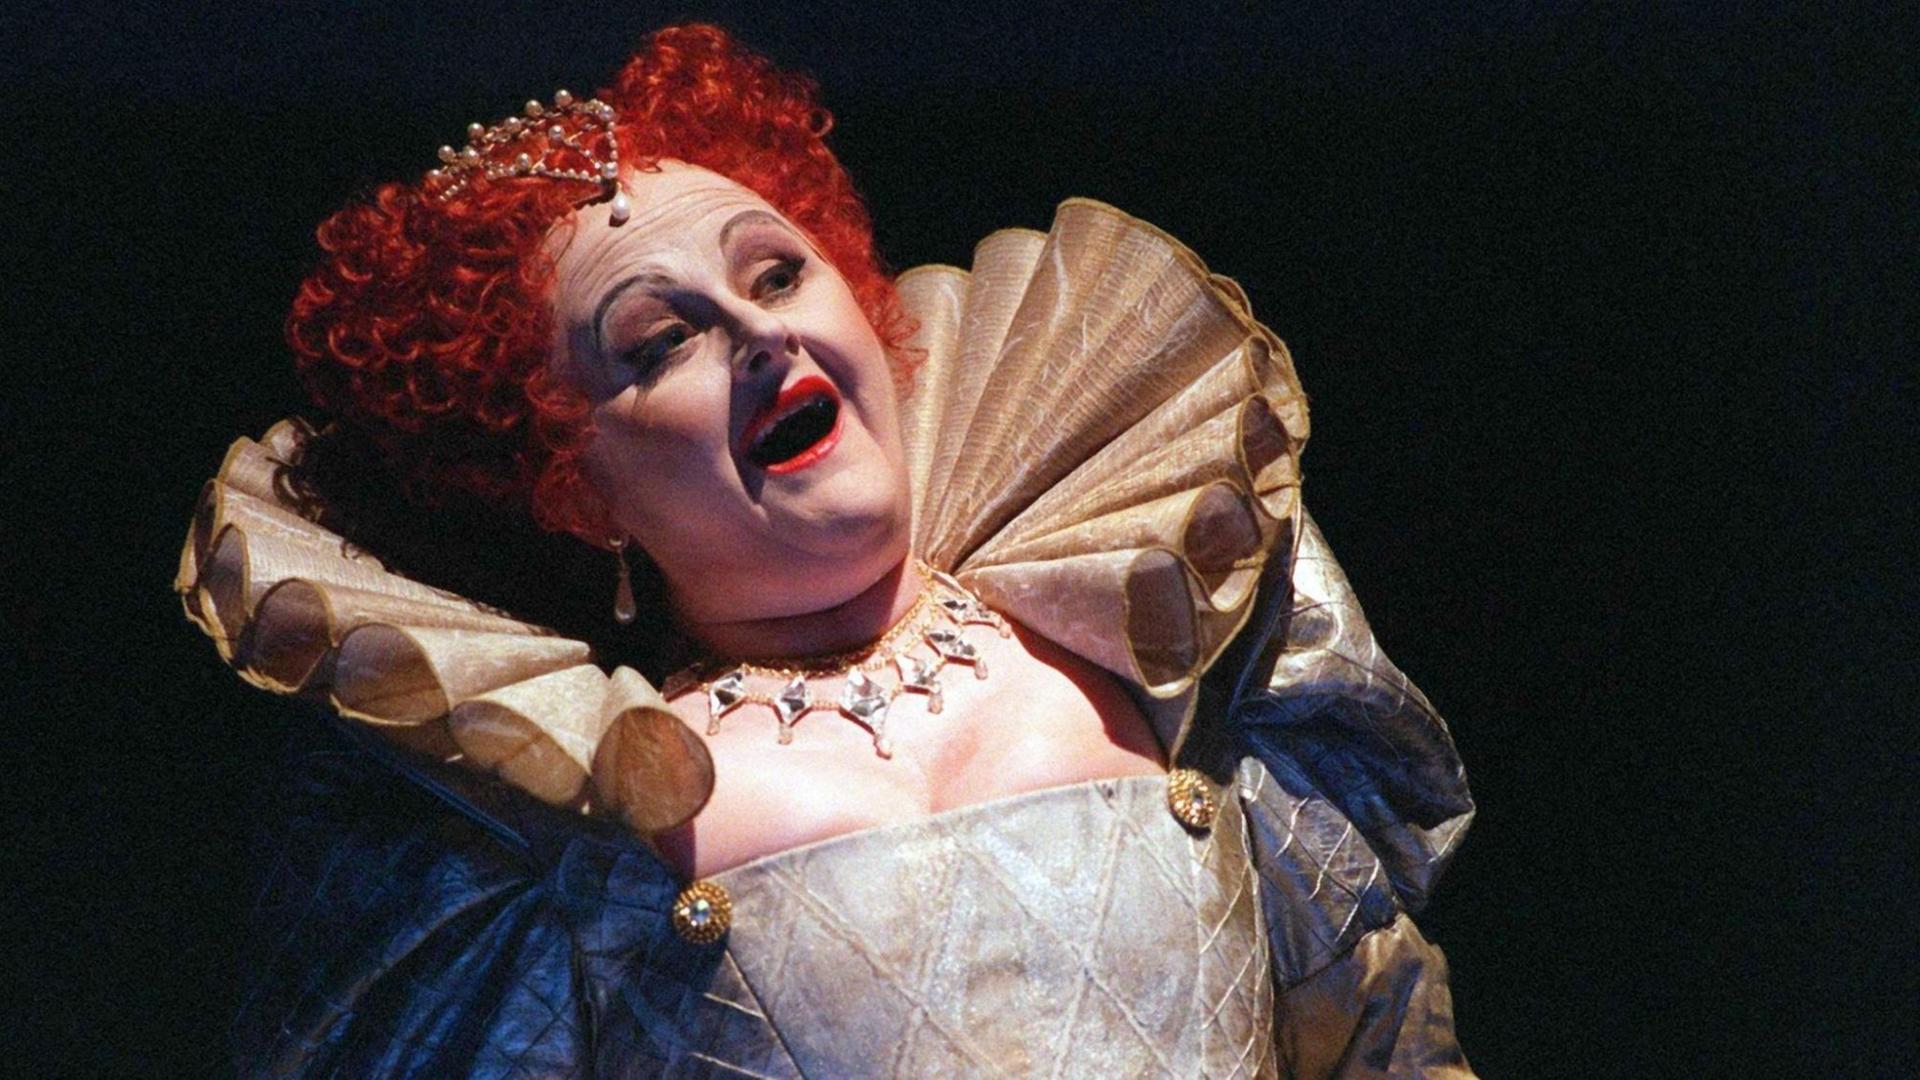 Eine Frau mit roter Perücke im viktorianischen Kostüm singt. Es handelt sich um Edita Gruberová.